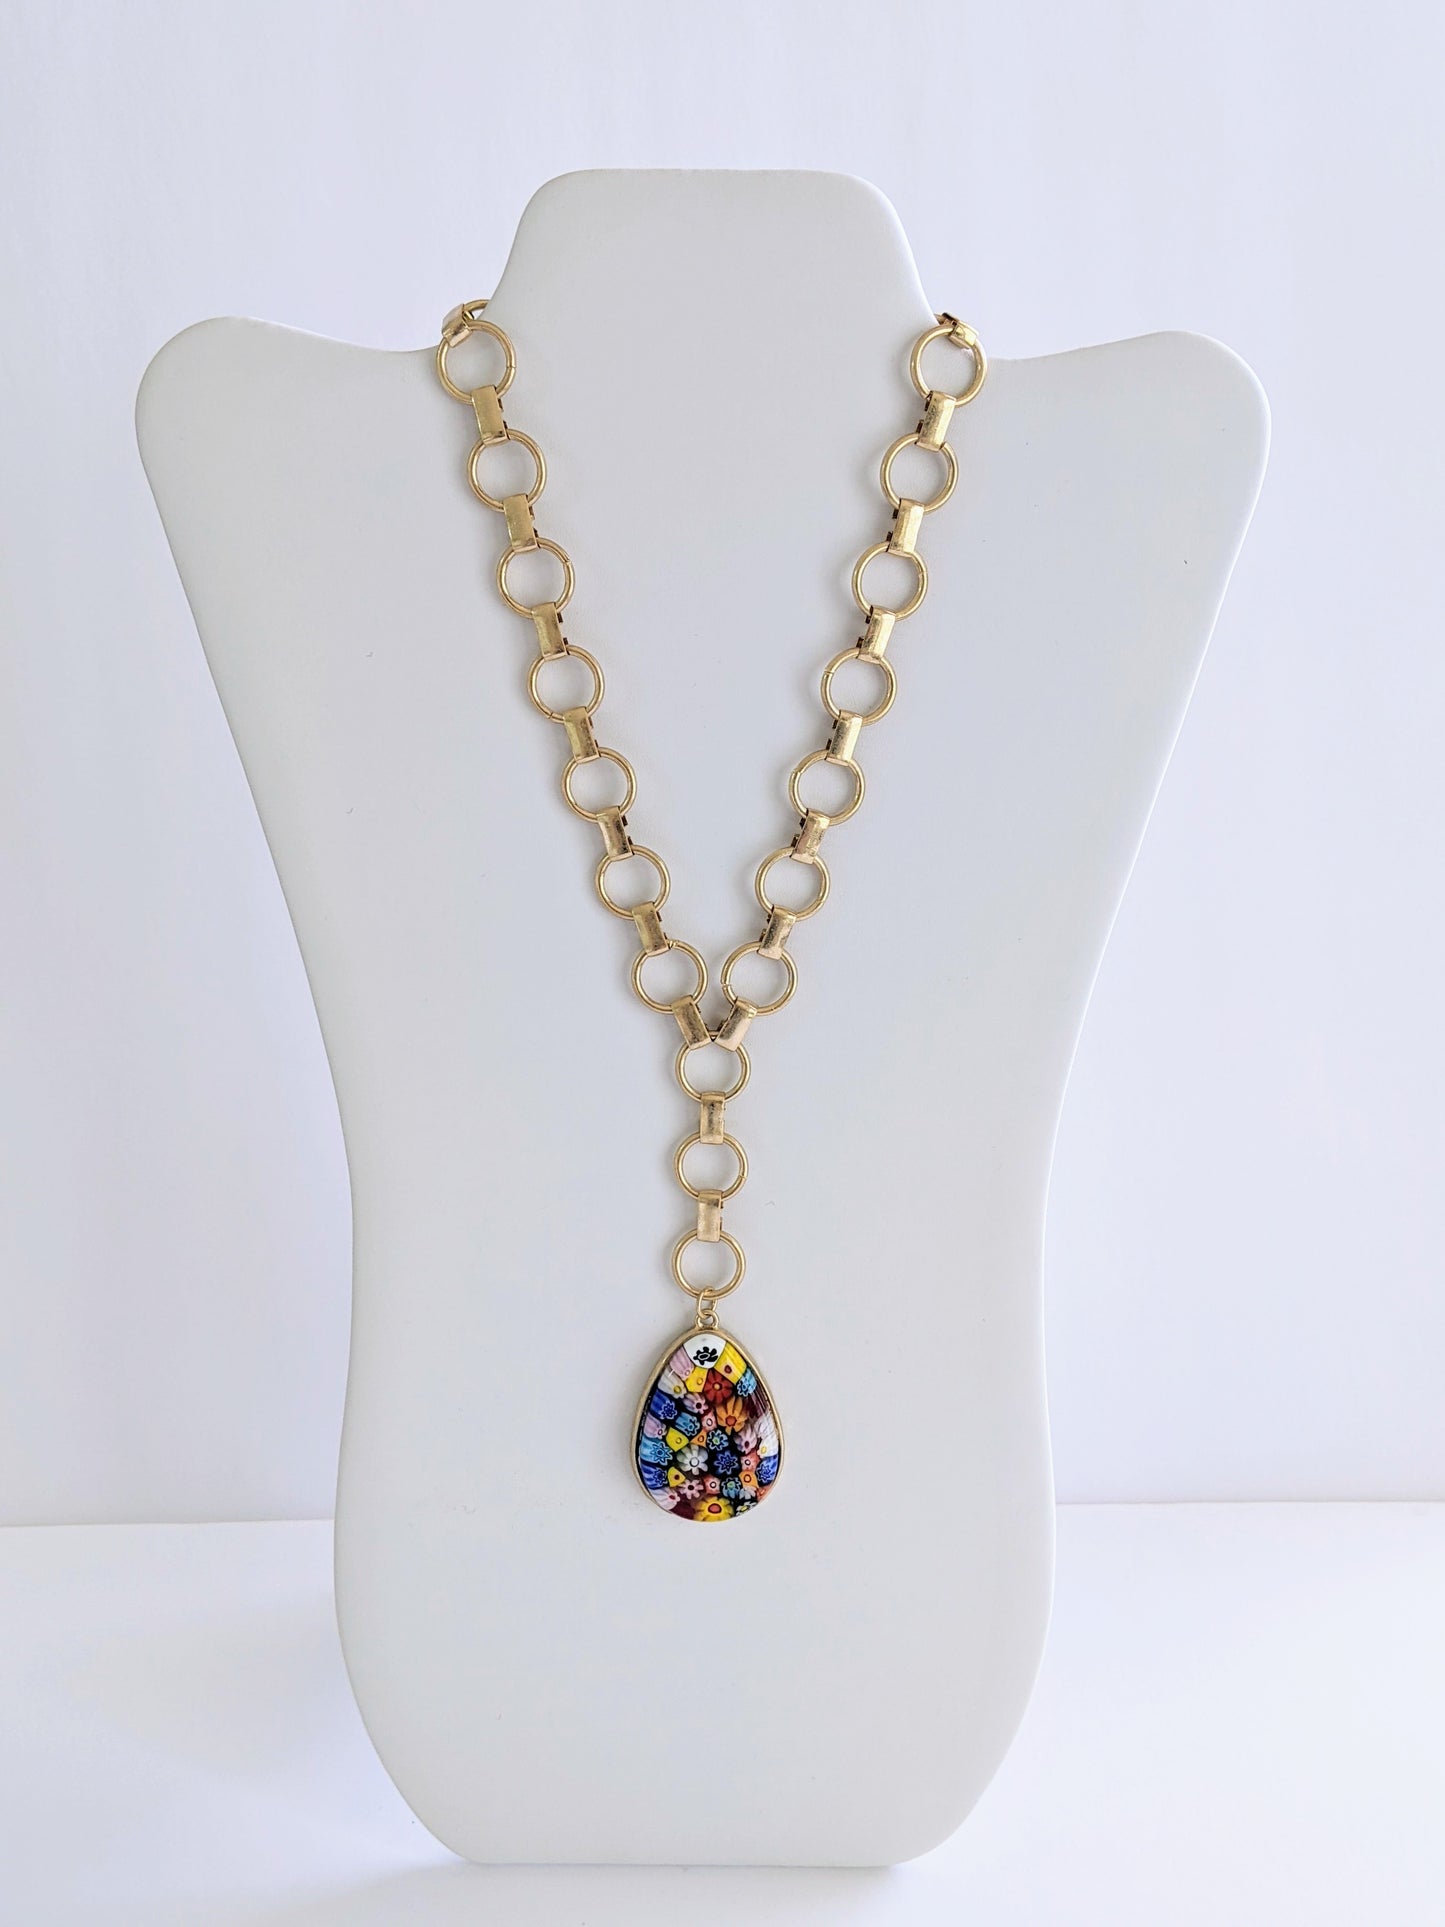 Millefiori Glass Teardrop Pendant Y Necklace in Multi